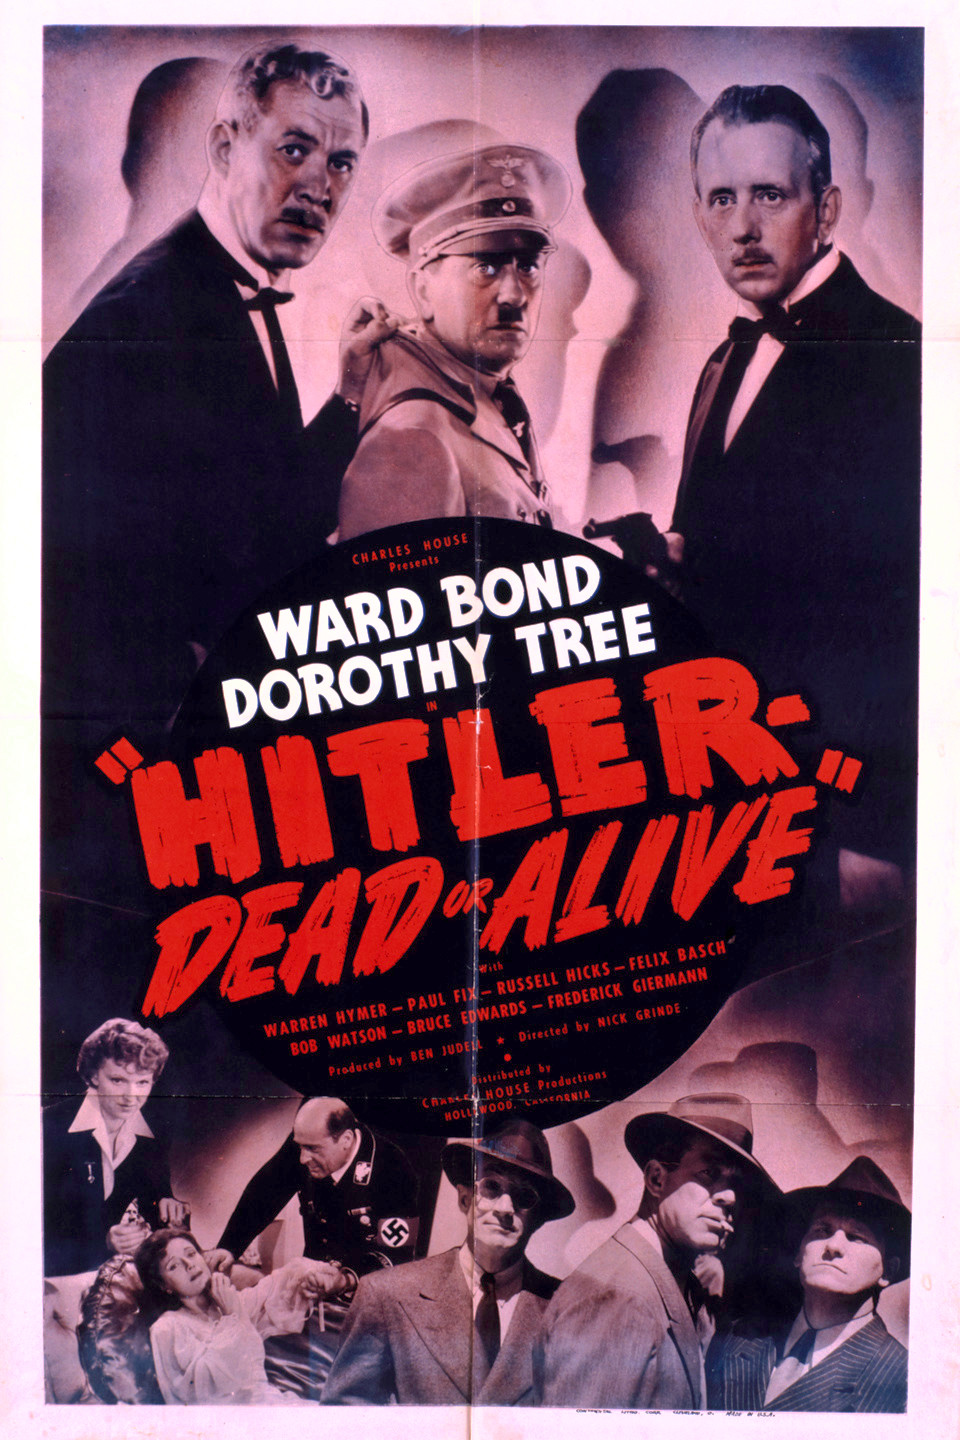 Hitler--Dead or Alive (1942) Screenshot 5